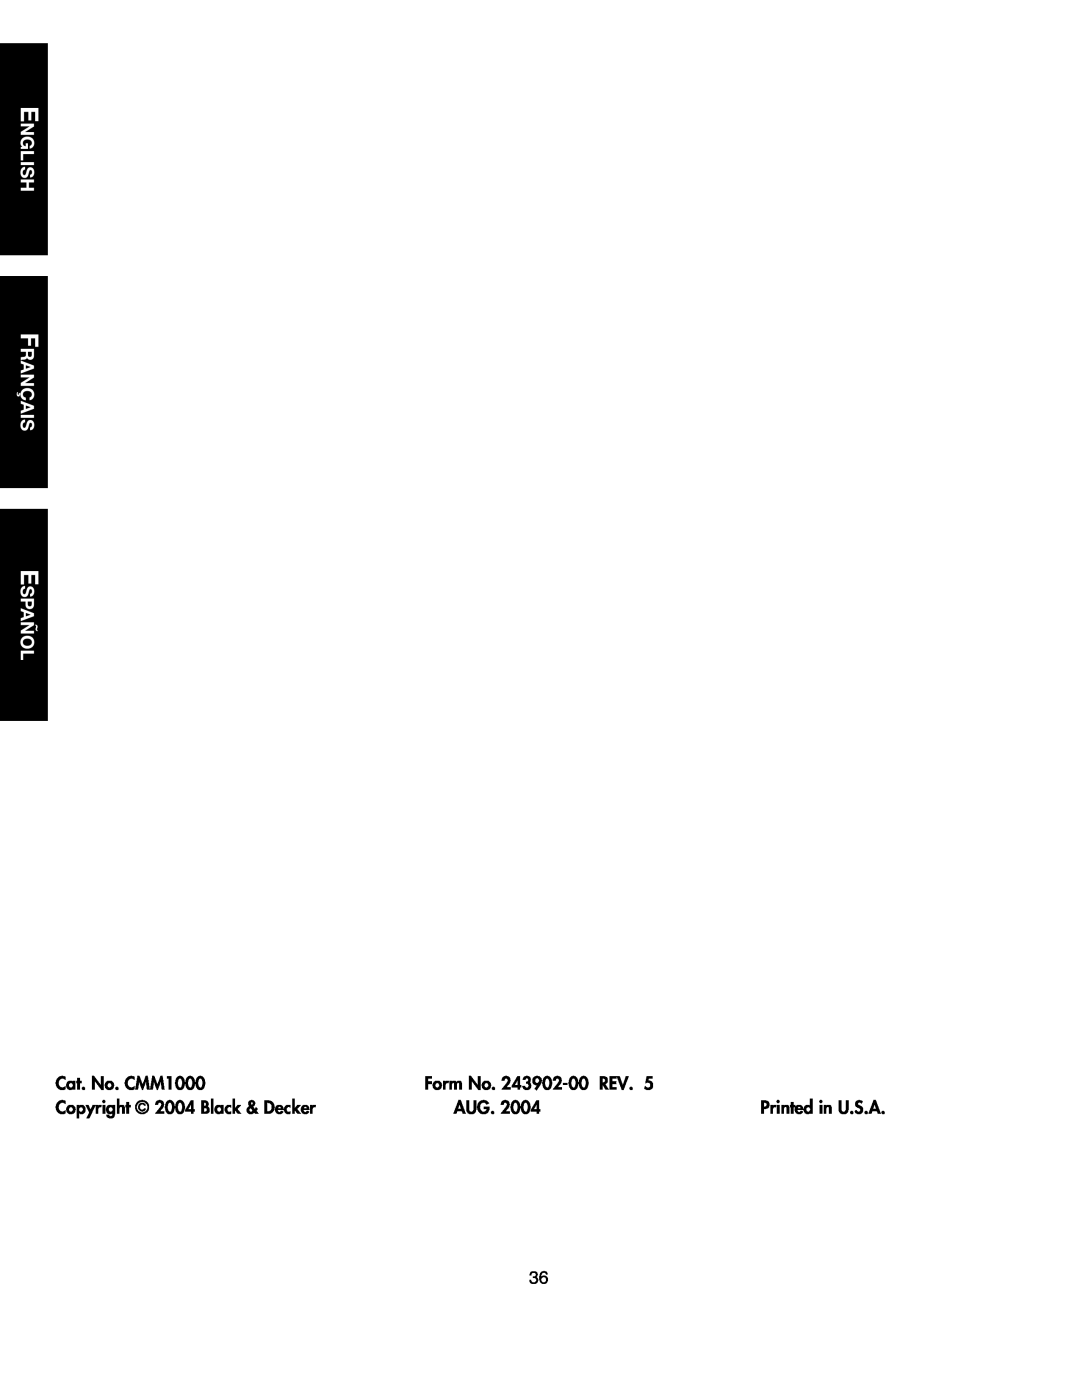 Black & Decker English Français Español, Cat. No. CMM1000, Form No. 243902-00 REV, Copyright 2004 Black & Decker 